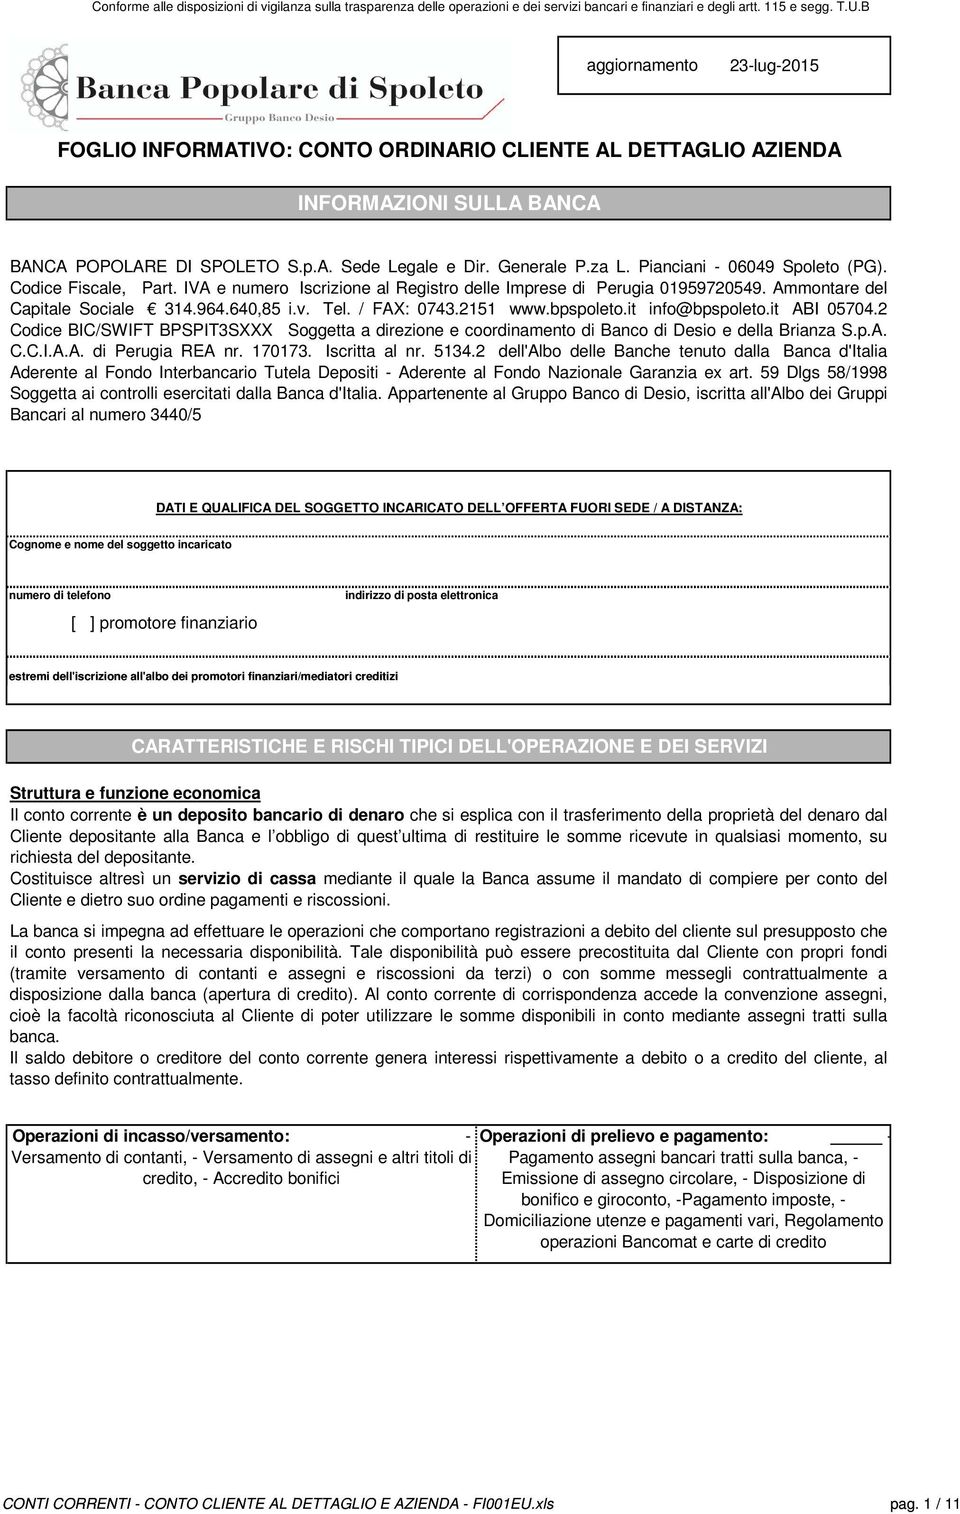 2151 www.bpspoleto.it info@bpspoleto.it ABI 05704.2 Codice BIC/SWIFT BPSPIT3SXXX Soggetta a direzione e coordinamento di Banco di Desio e della Brianza S.p.A. C.C.I.A.A. di Perugia REA nr. 170173.